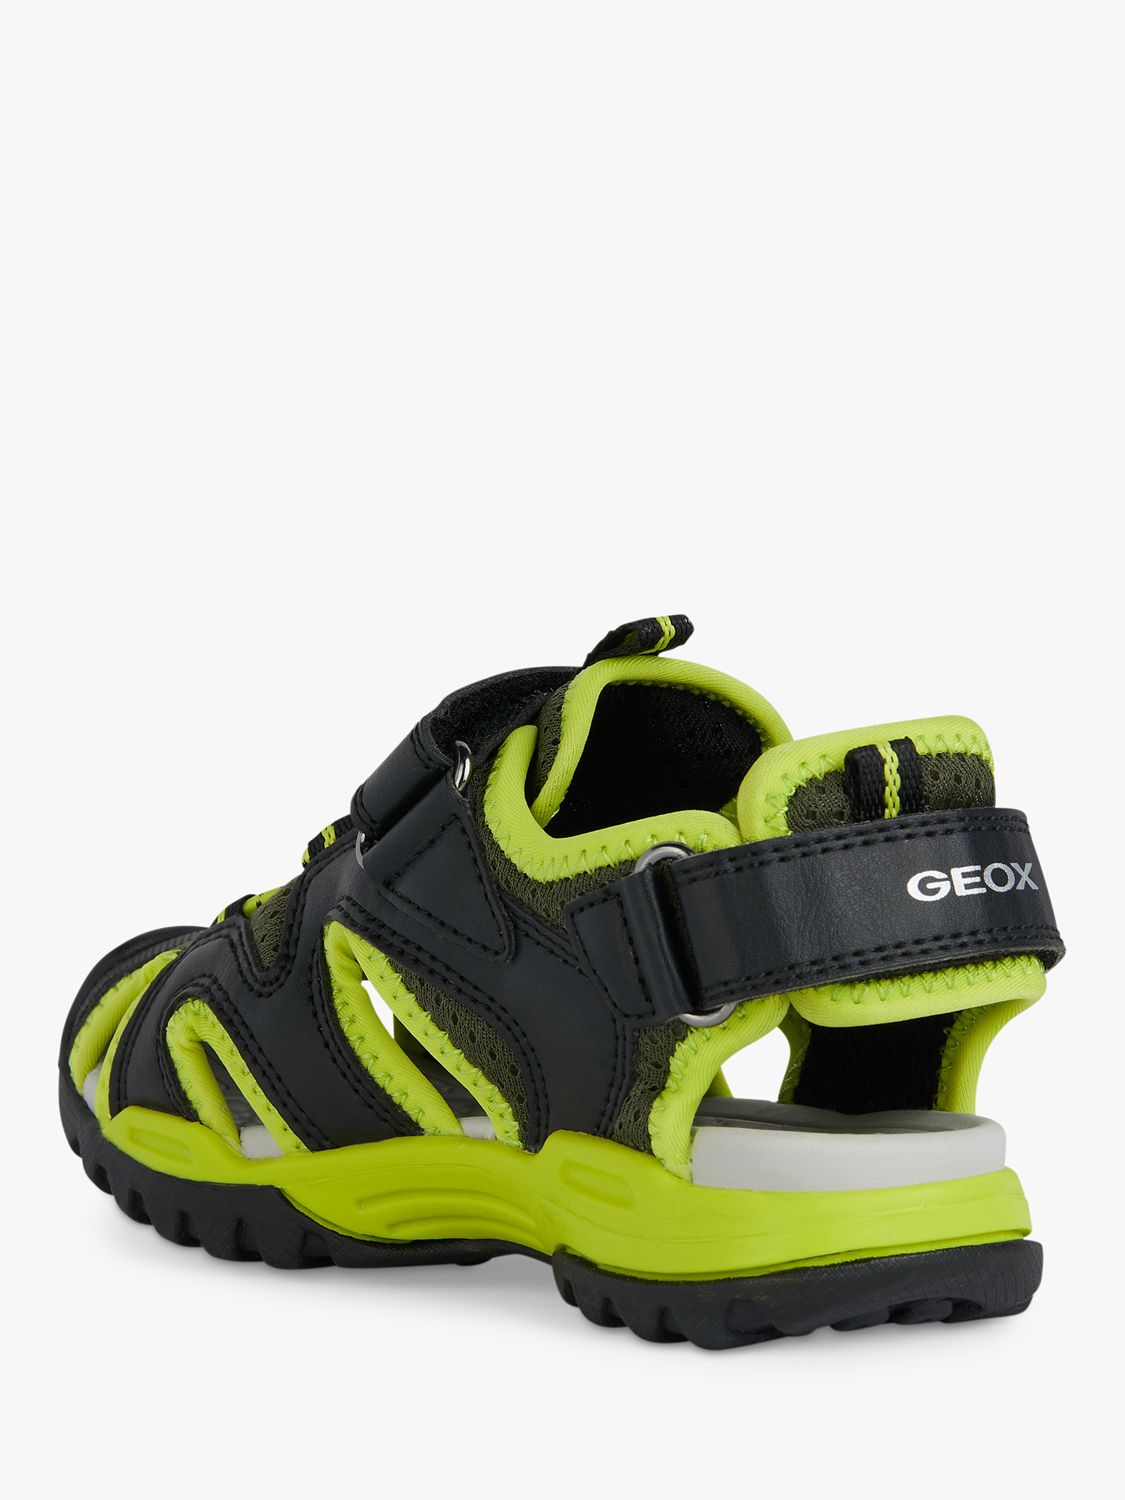 Geox Borealis Closed Toe Sandals, Black/Lime, EU31